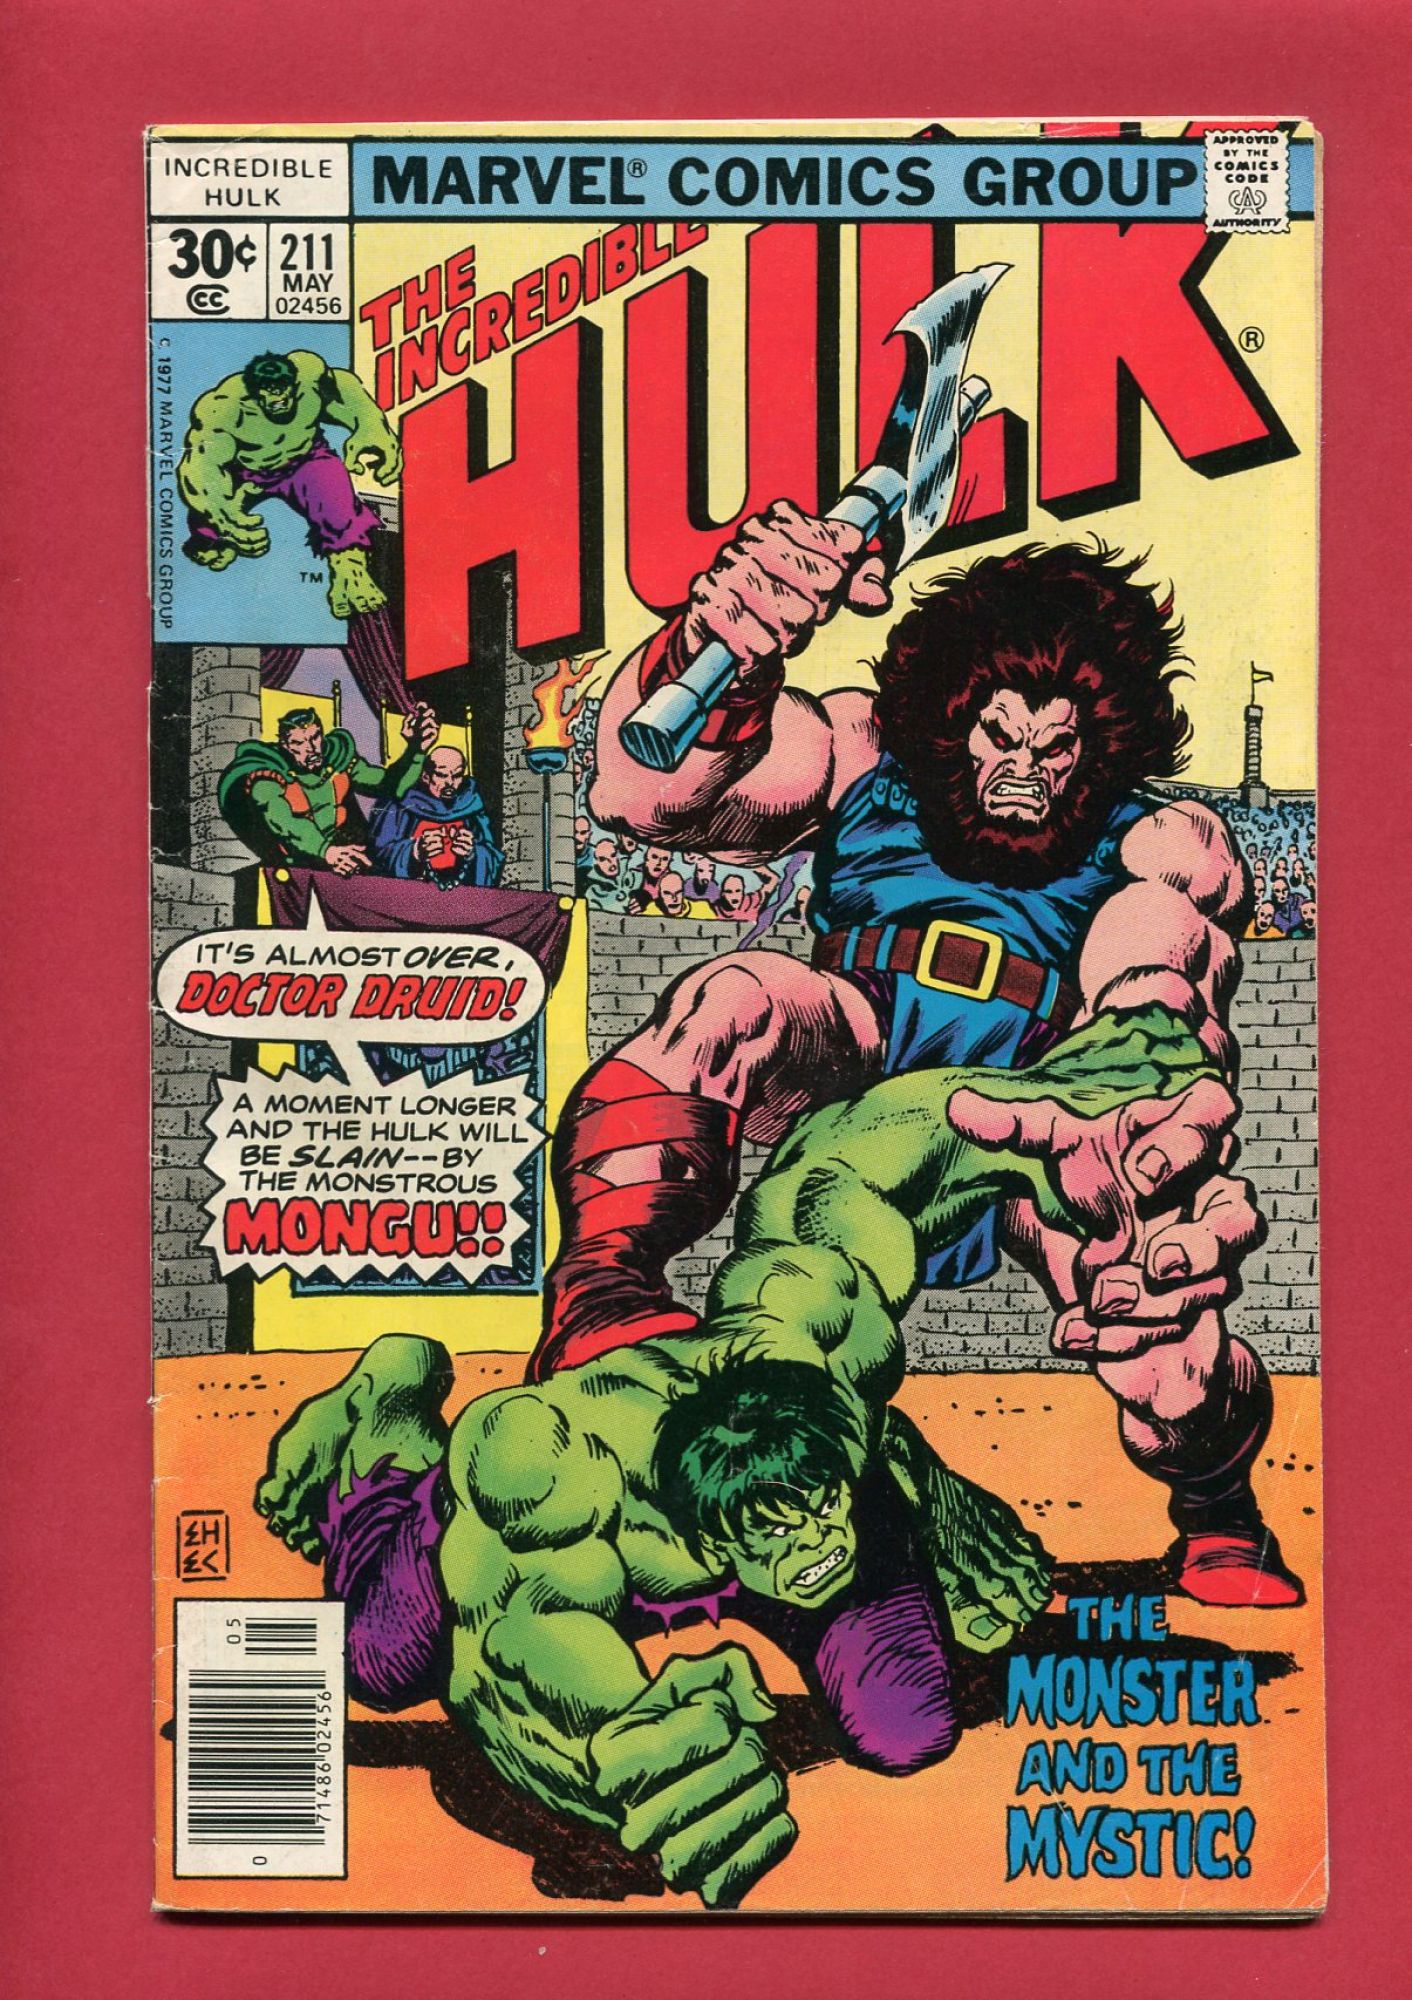 Incredible Hulk #211, May 1977, 4.5 VG+